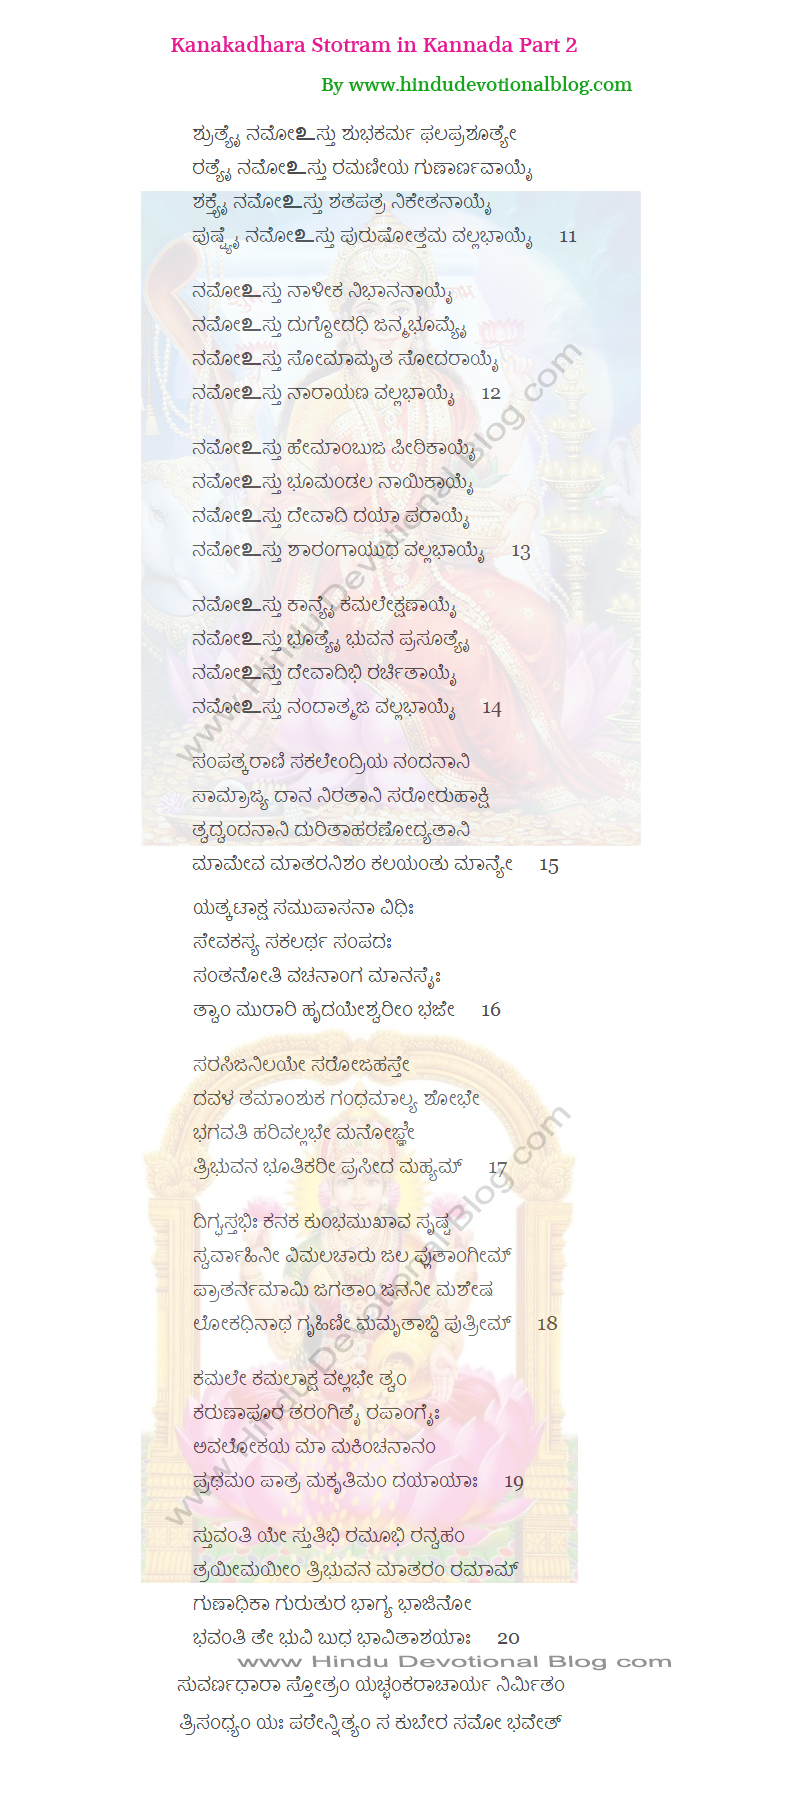 Picture of Kanakadhara Stotram Mantra Lyrics Part 2 in Kannada Language by Adi Shankaracharya